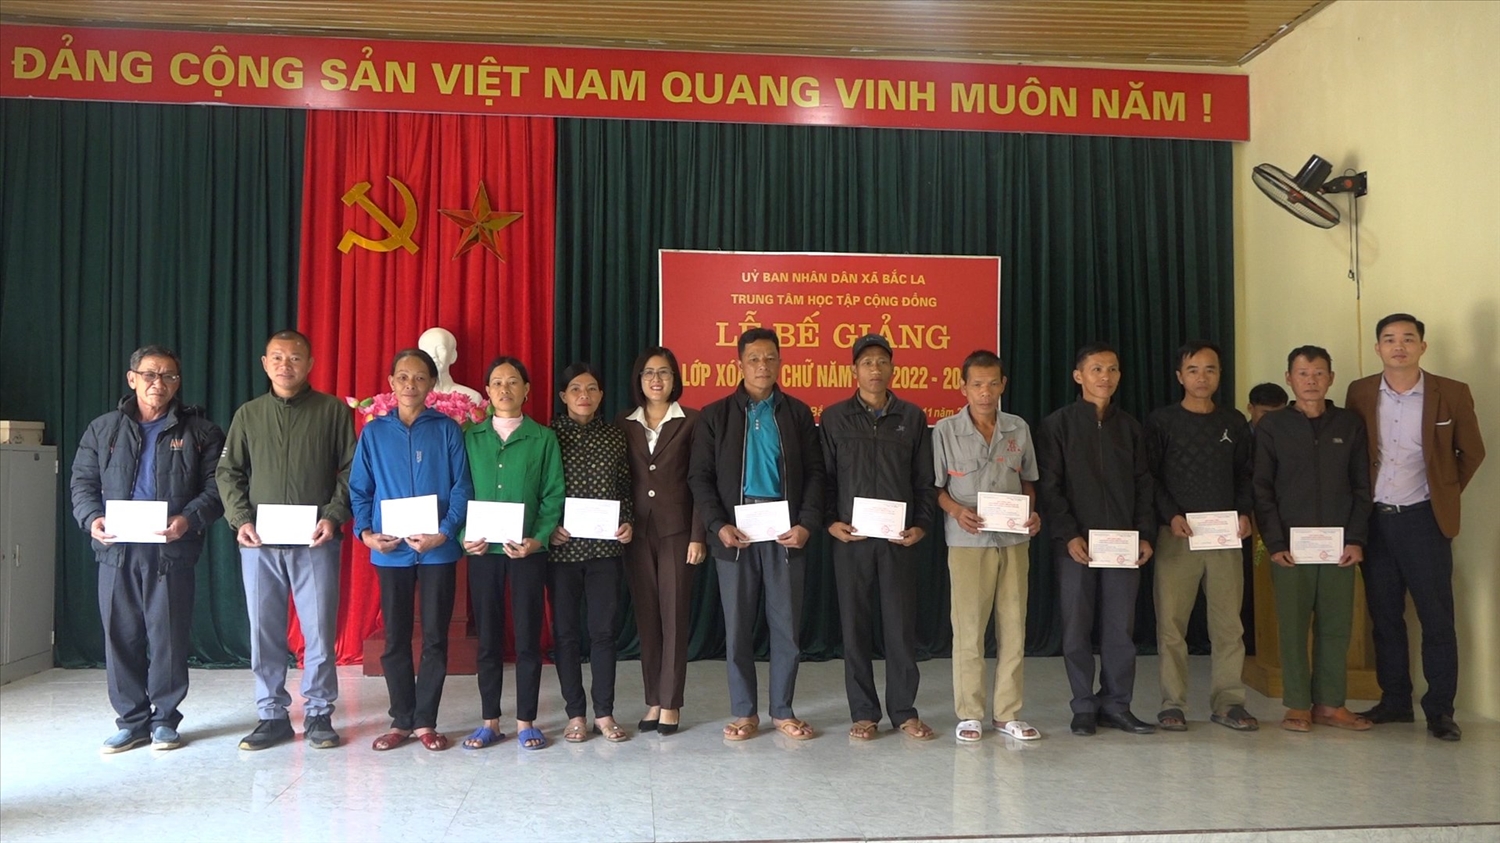 Lãnh đạo Phòng GD – ĐT huyện Văn Lãng, lãnh đạo UBND xã Bắc La trao giấy chứng nhận hoàn thành chương trình xóa mù chữ giai đoạn 2 cho các học viên. (Ảnh: Mỹ Hạnh)